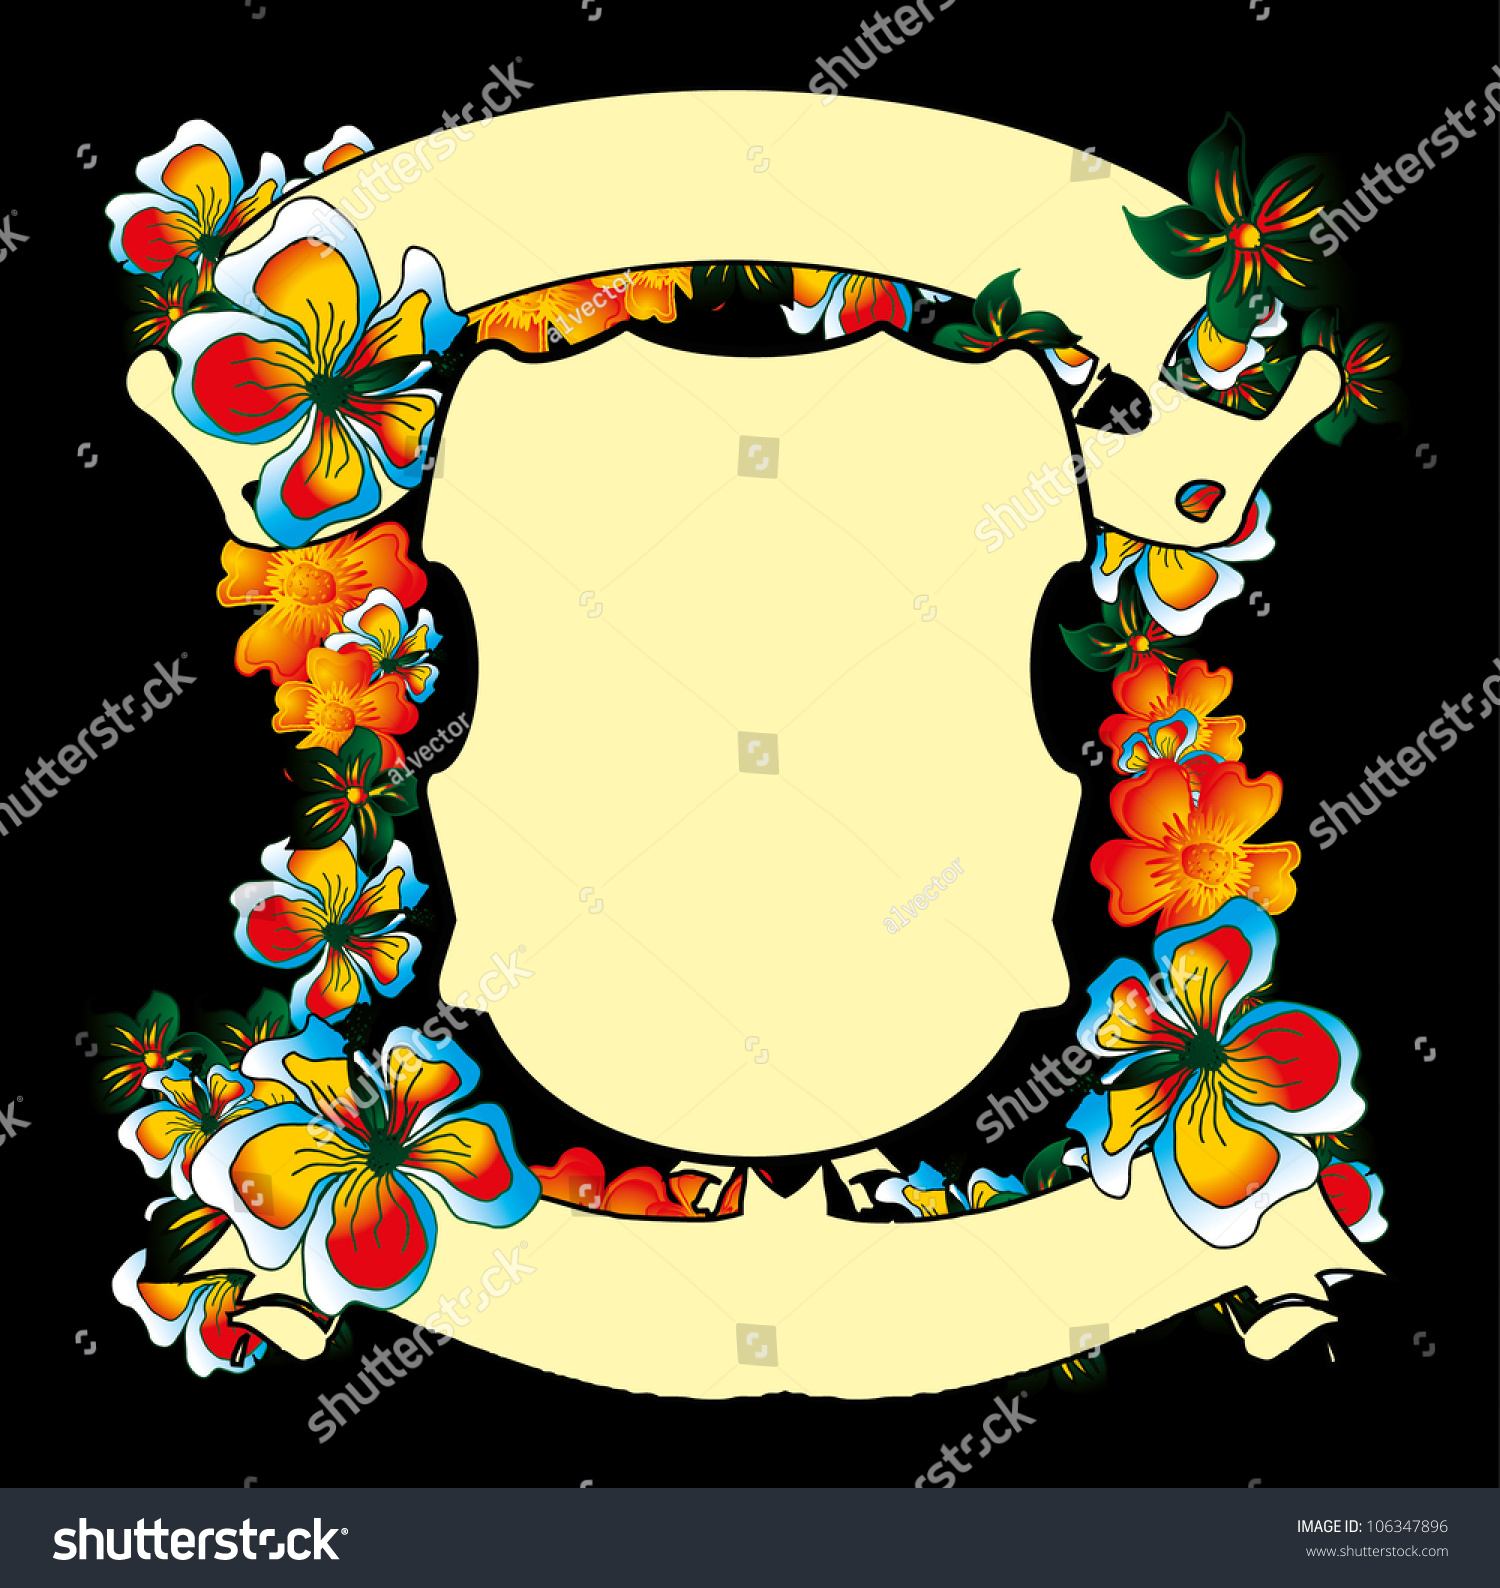 Flower Frame Stock Vector 106347896 - Shutterstock